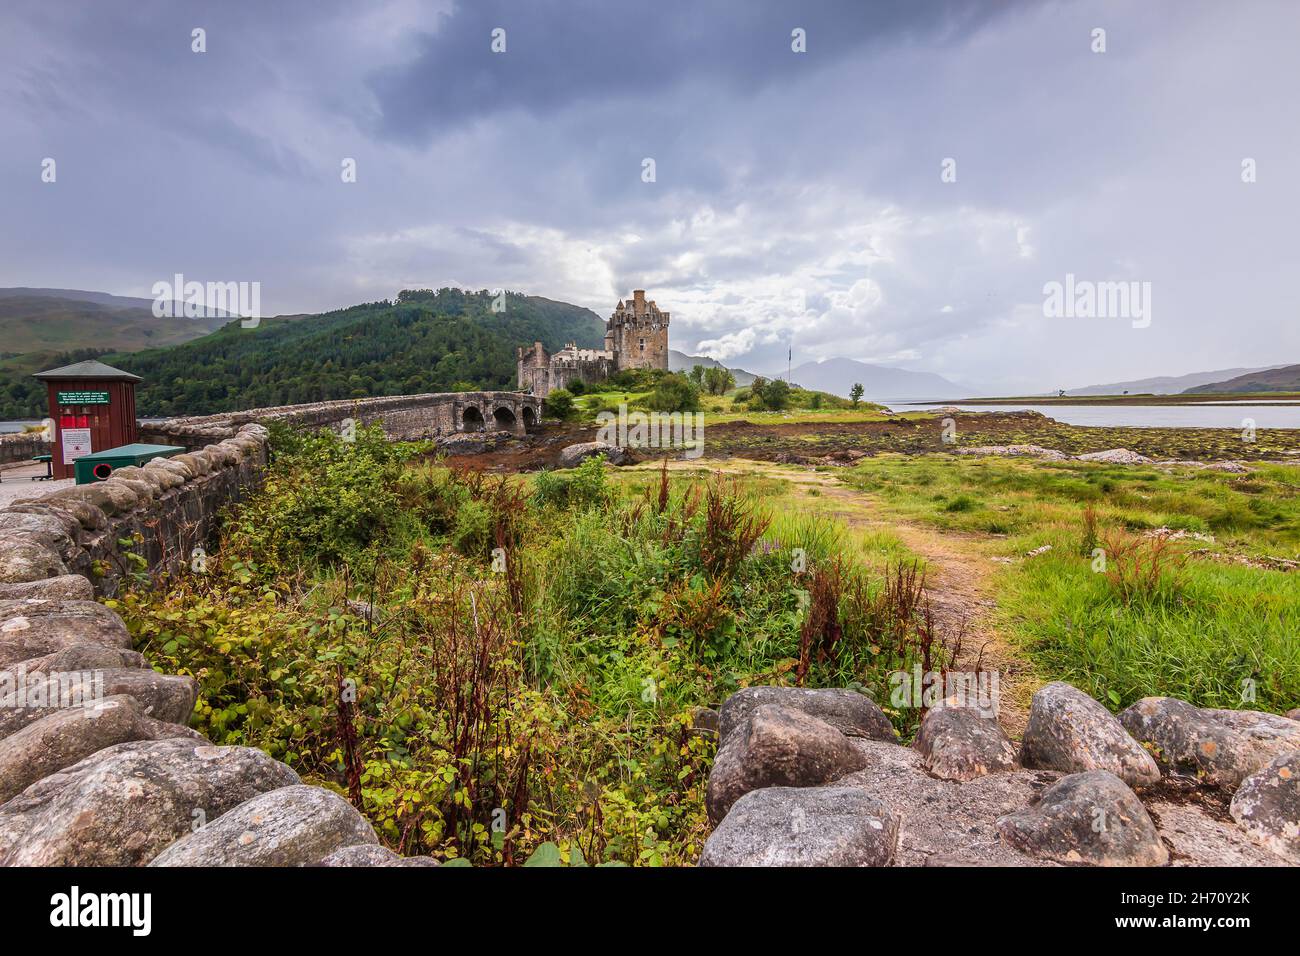 Paesaggio con il Castello di Eilean Donan in Scozia su un'isola. Storico ponte pedonale in pietra conduce al castello. Colline e lago sullo sfondo. Pietra wa Foto Stock